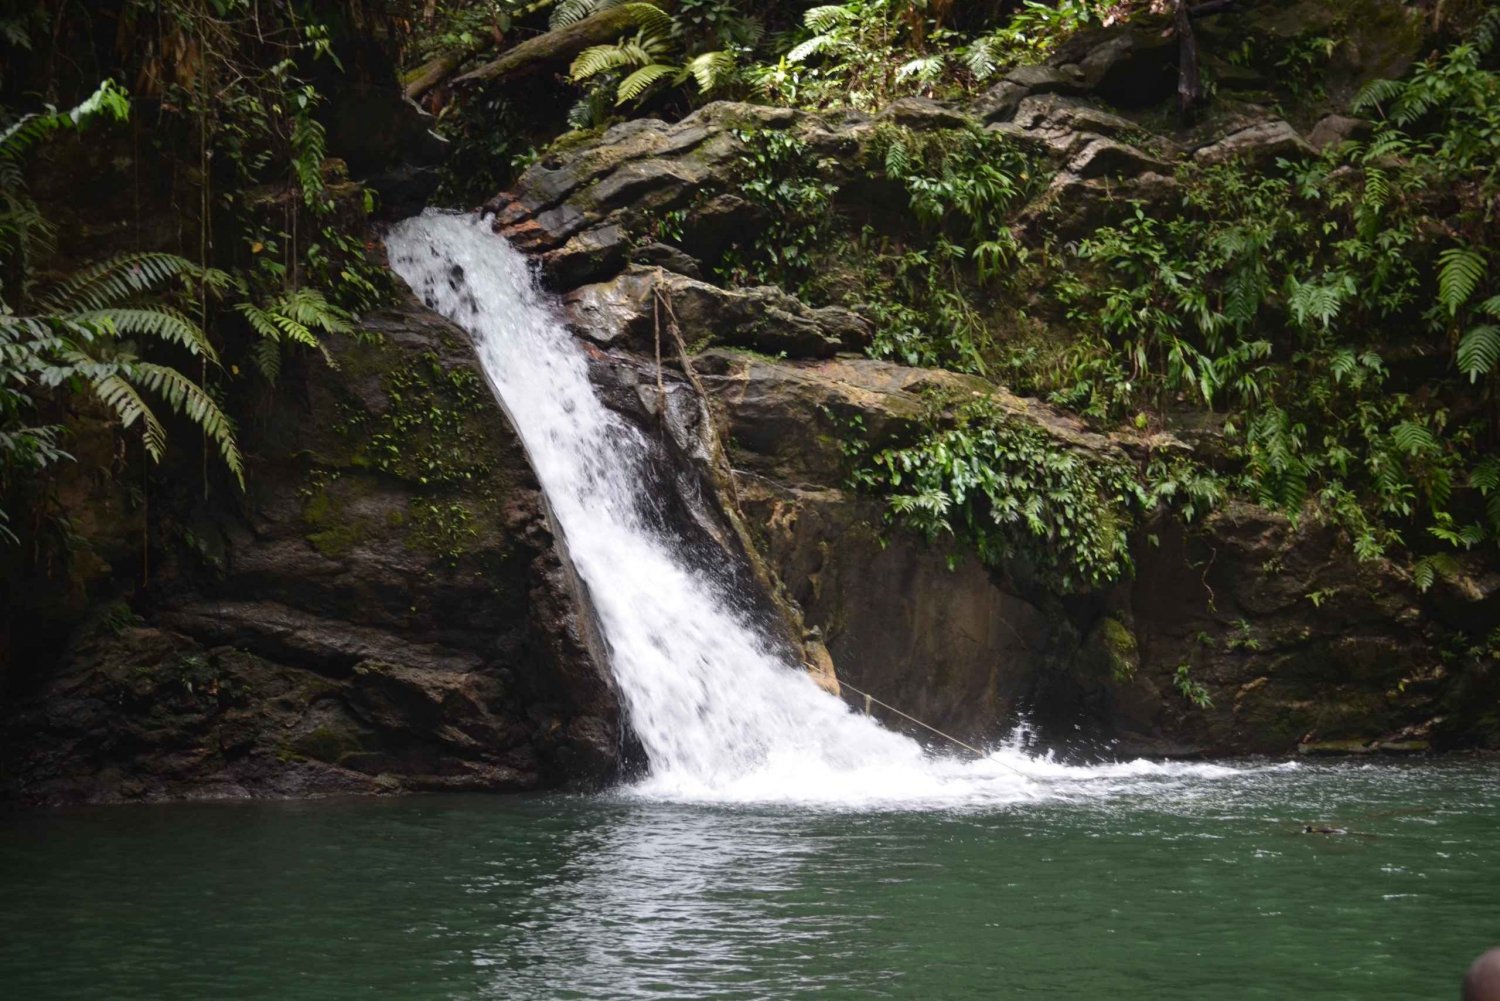 Trinidad: Rio Seco Waterfall